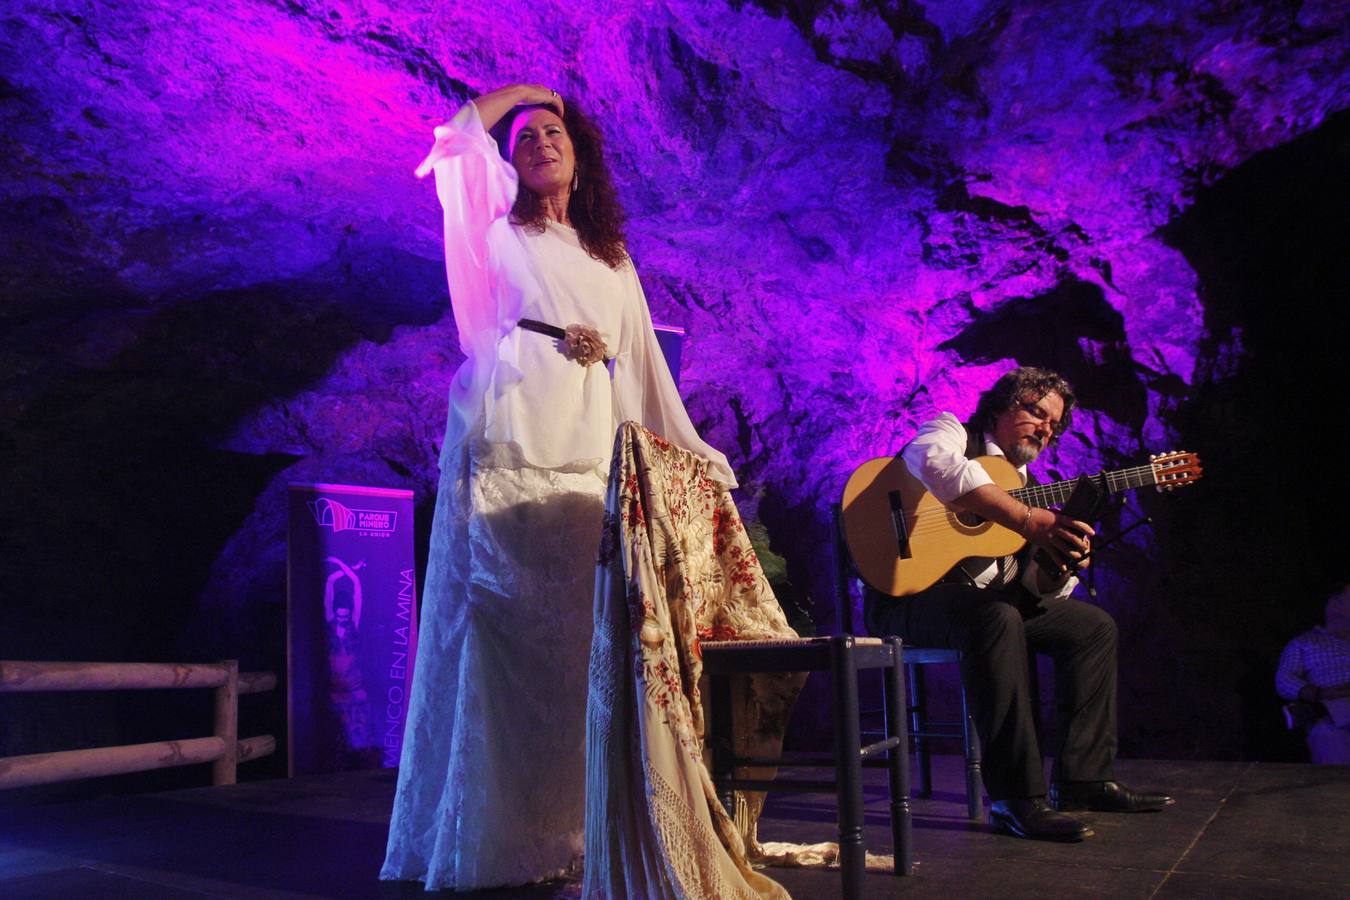 El corazón de la mina Agrupa Vicenta en La Unión fue ayer el escenario del recital de cante que ofreció la ganadora de la última edición del Cante de las Minas. La malagueña Antonia Contreras, Lámpara Minera en 2016, presentó en este entorno privilegiado su debut en solitario, 'La voz vivida'